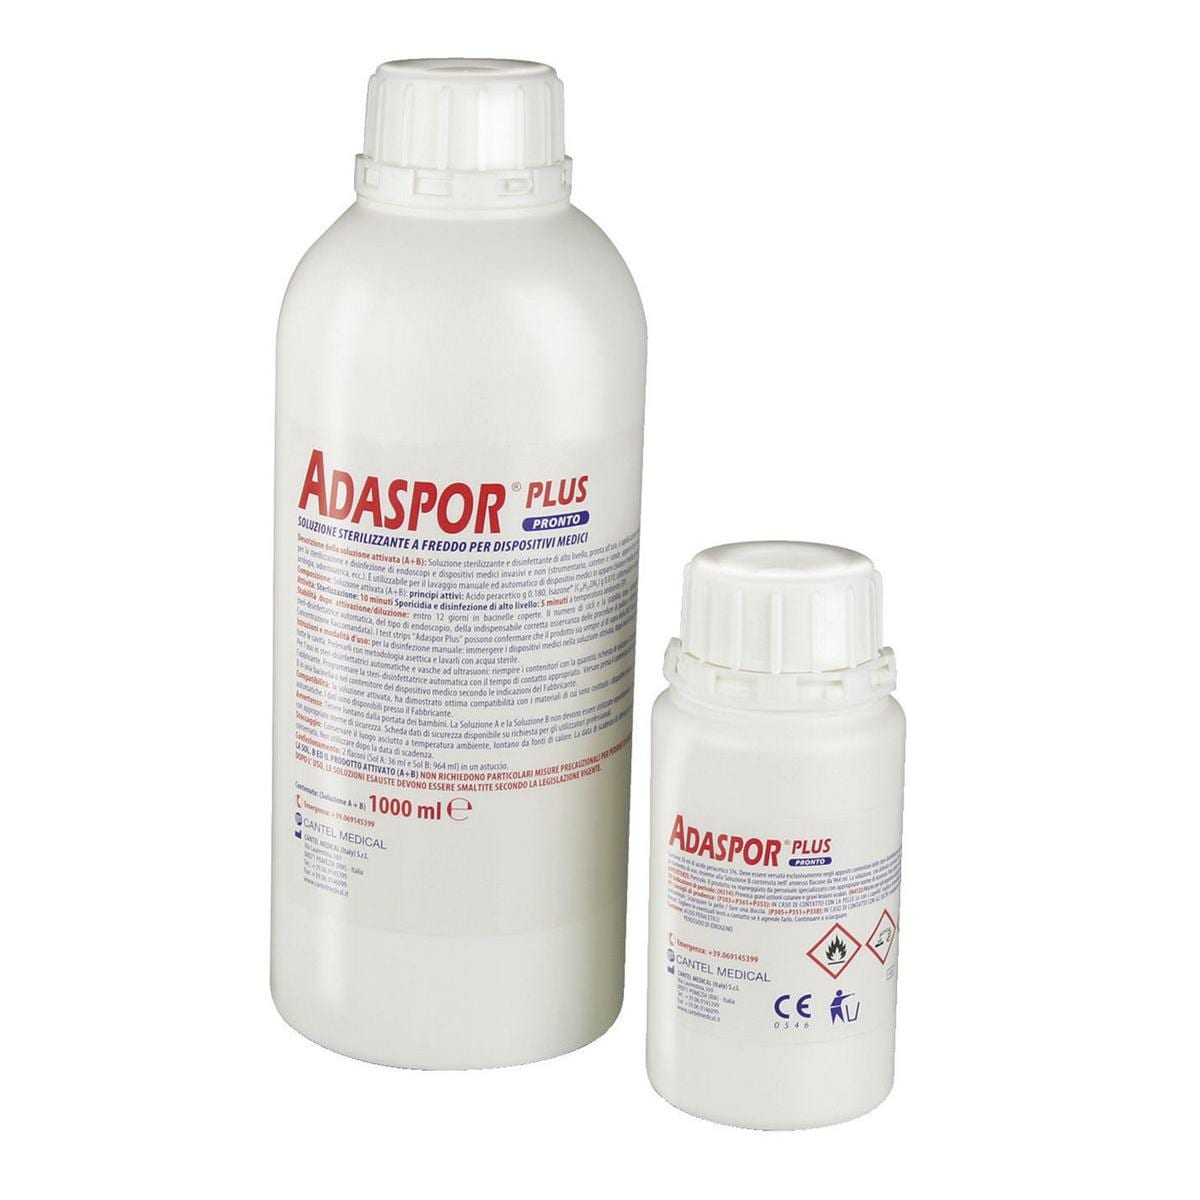 ADASPOR PLUS PRONTO - Confezione da 1 litro contenente 2 flaconi (soluzione  A + B) - Henry Schein Krugg S.r.l.